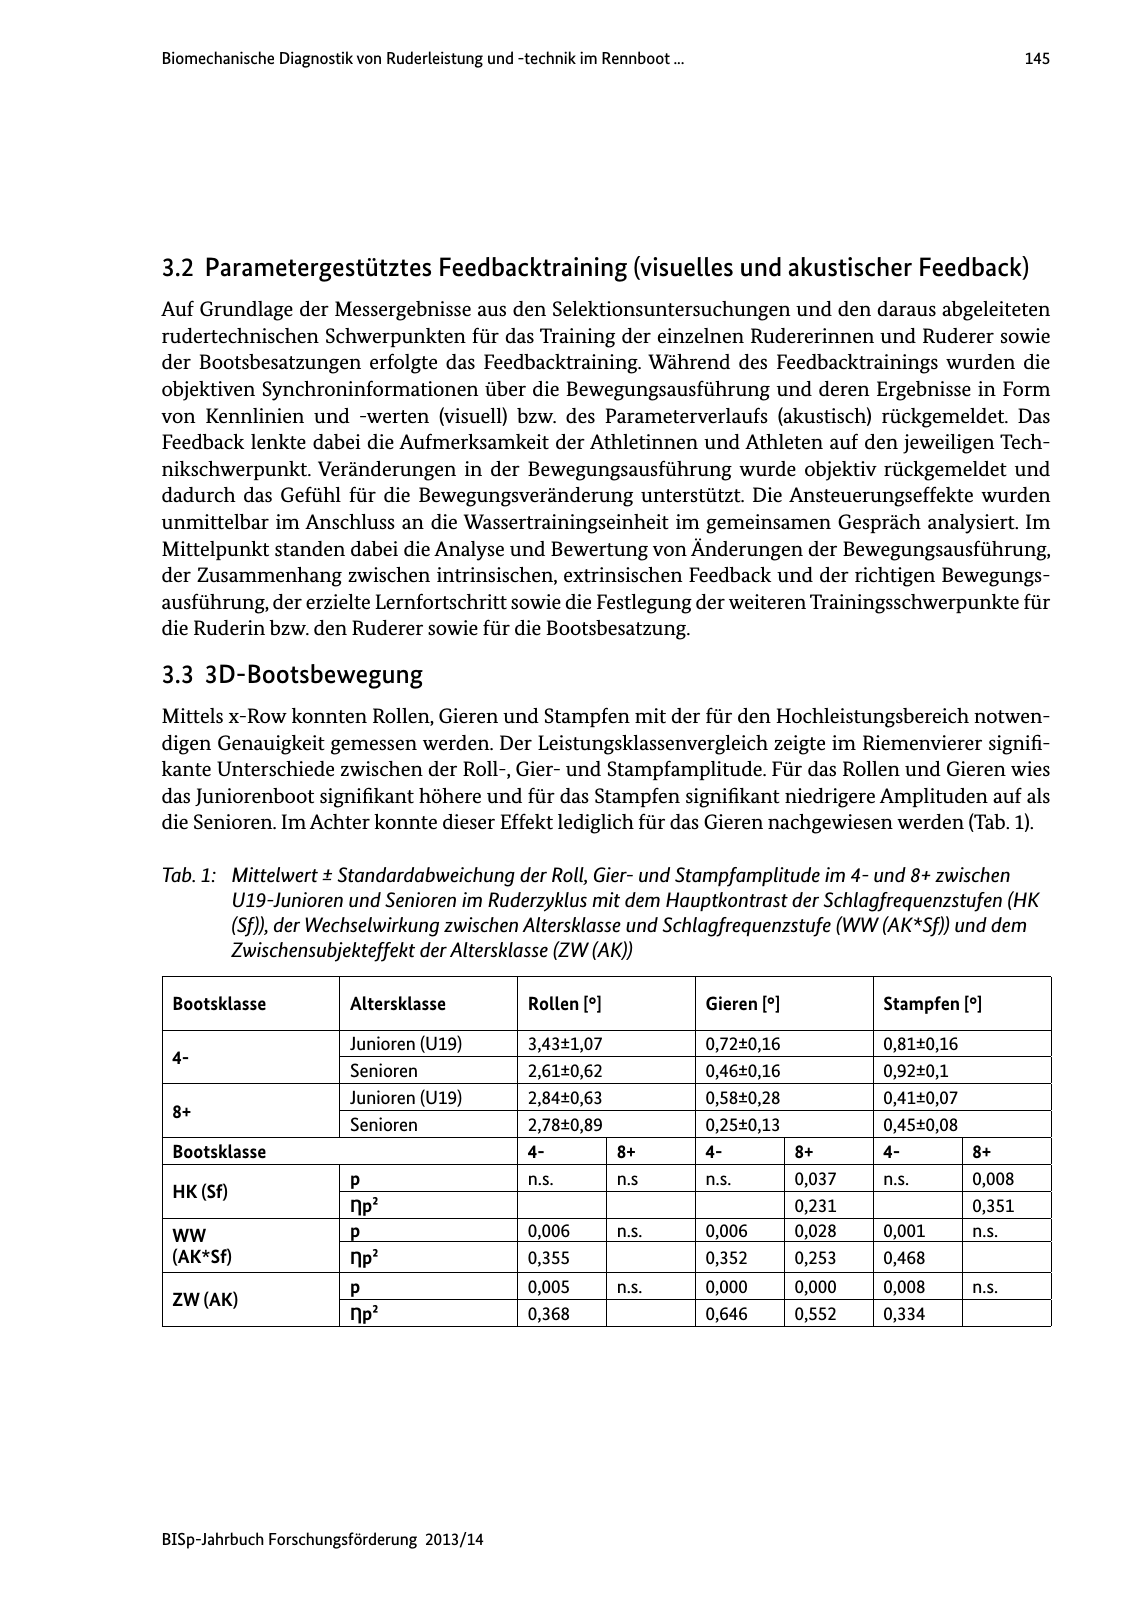 Vorschau BISp-Jahrbuch Forschungsförderung 2013/14 Seite 146